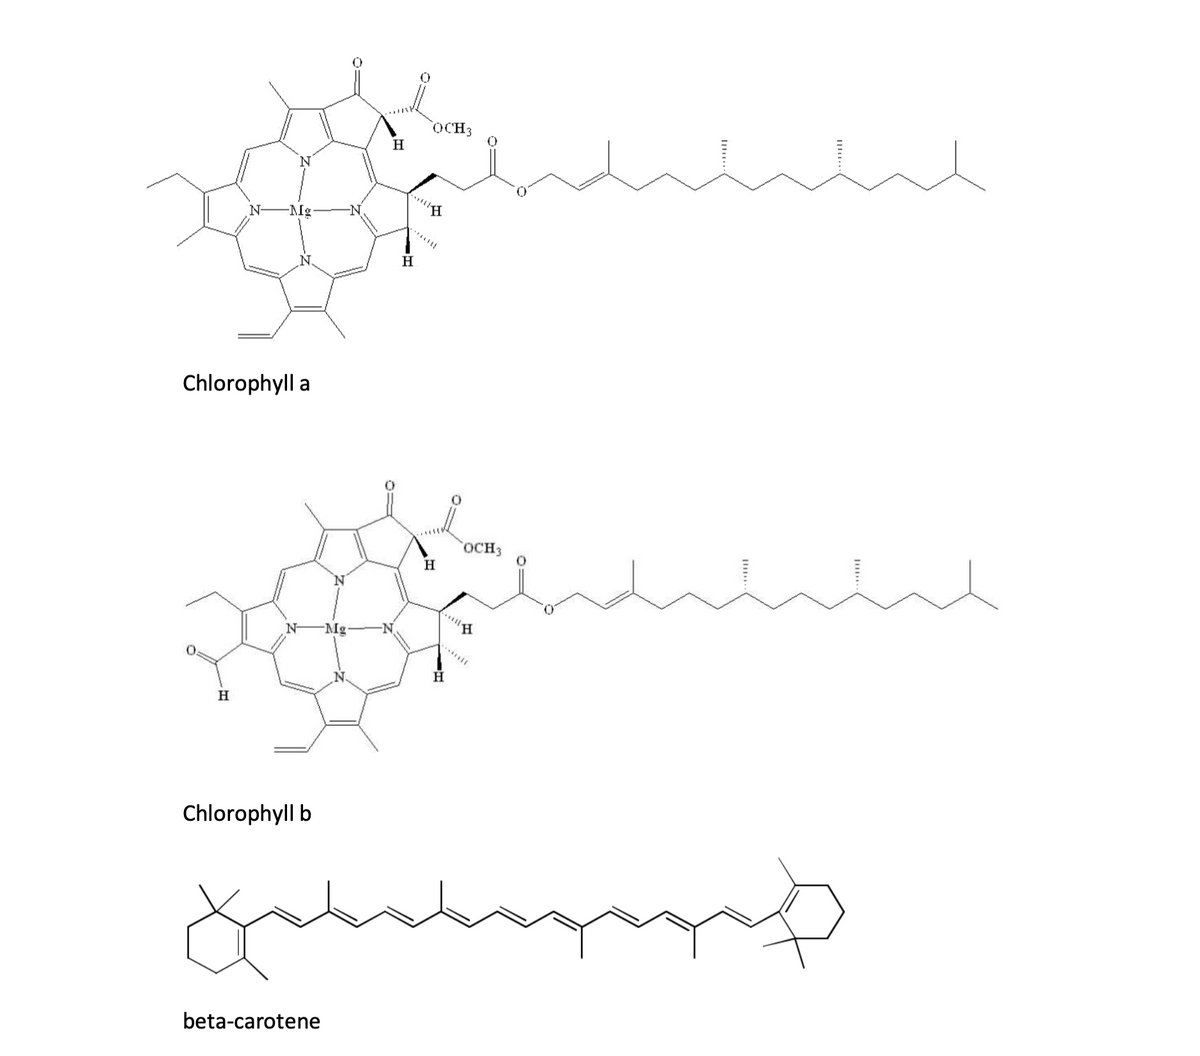 OCH3
H
"H
N-
-Mg
H
Chlorophyll a
OCH3
H
Mg-
H.
Chlorophyll b
beta-carotene
II..
